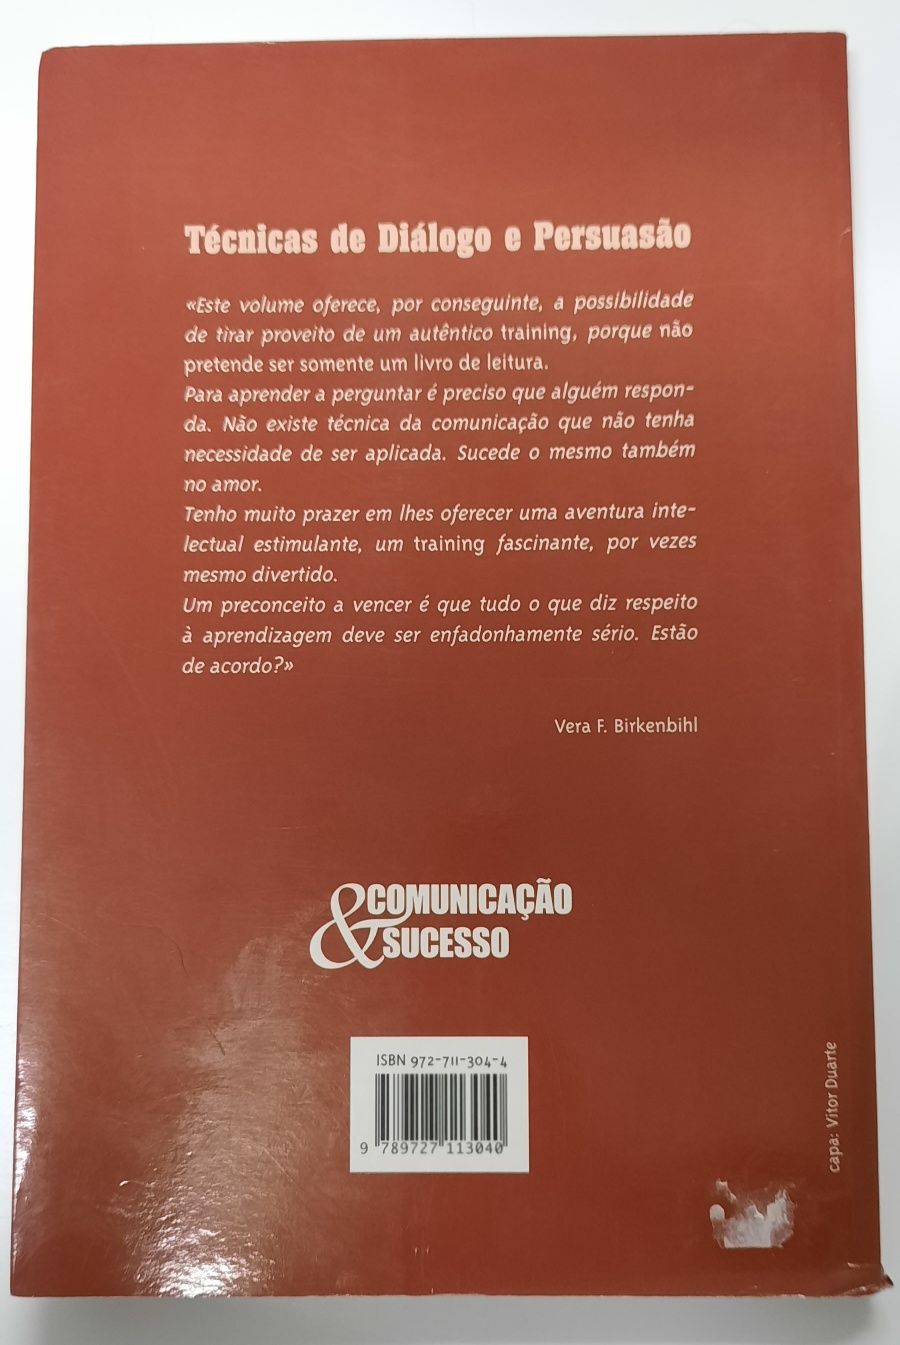 Livro: "Técnicas de Diálogo e Persuasão" de Vera Birkenbihl